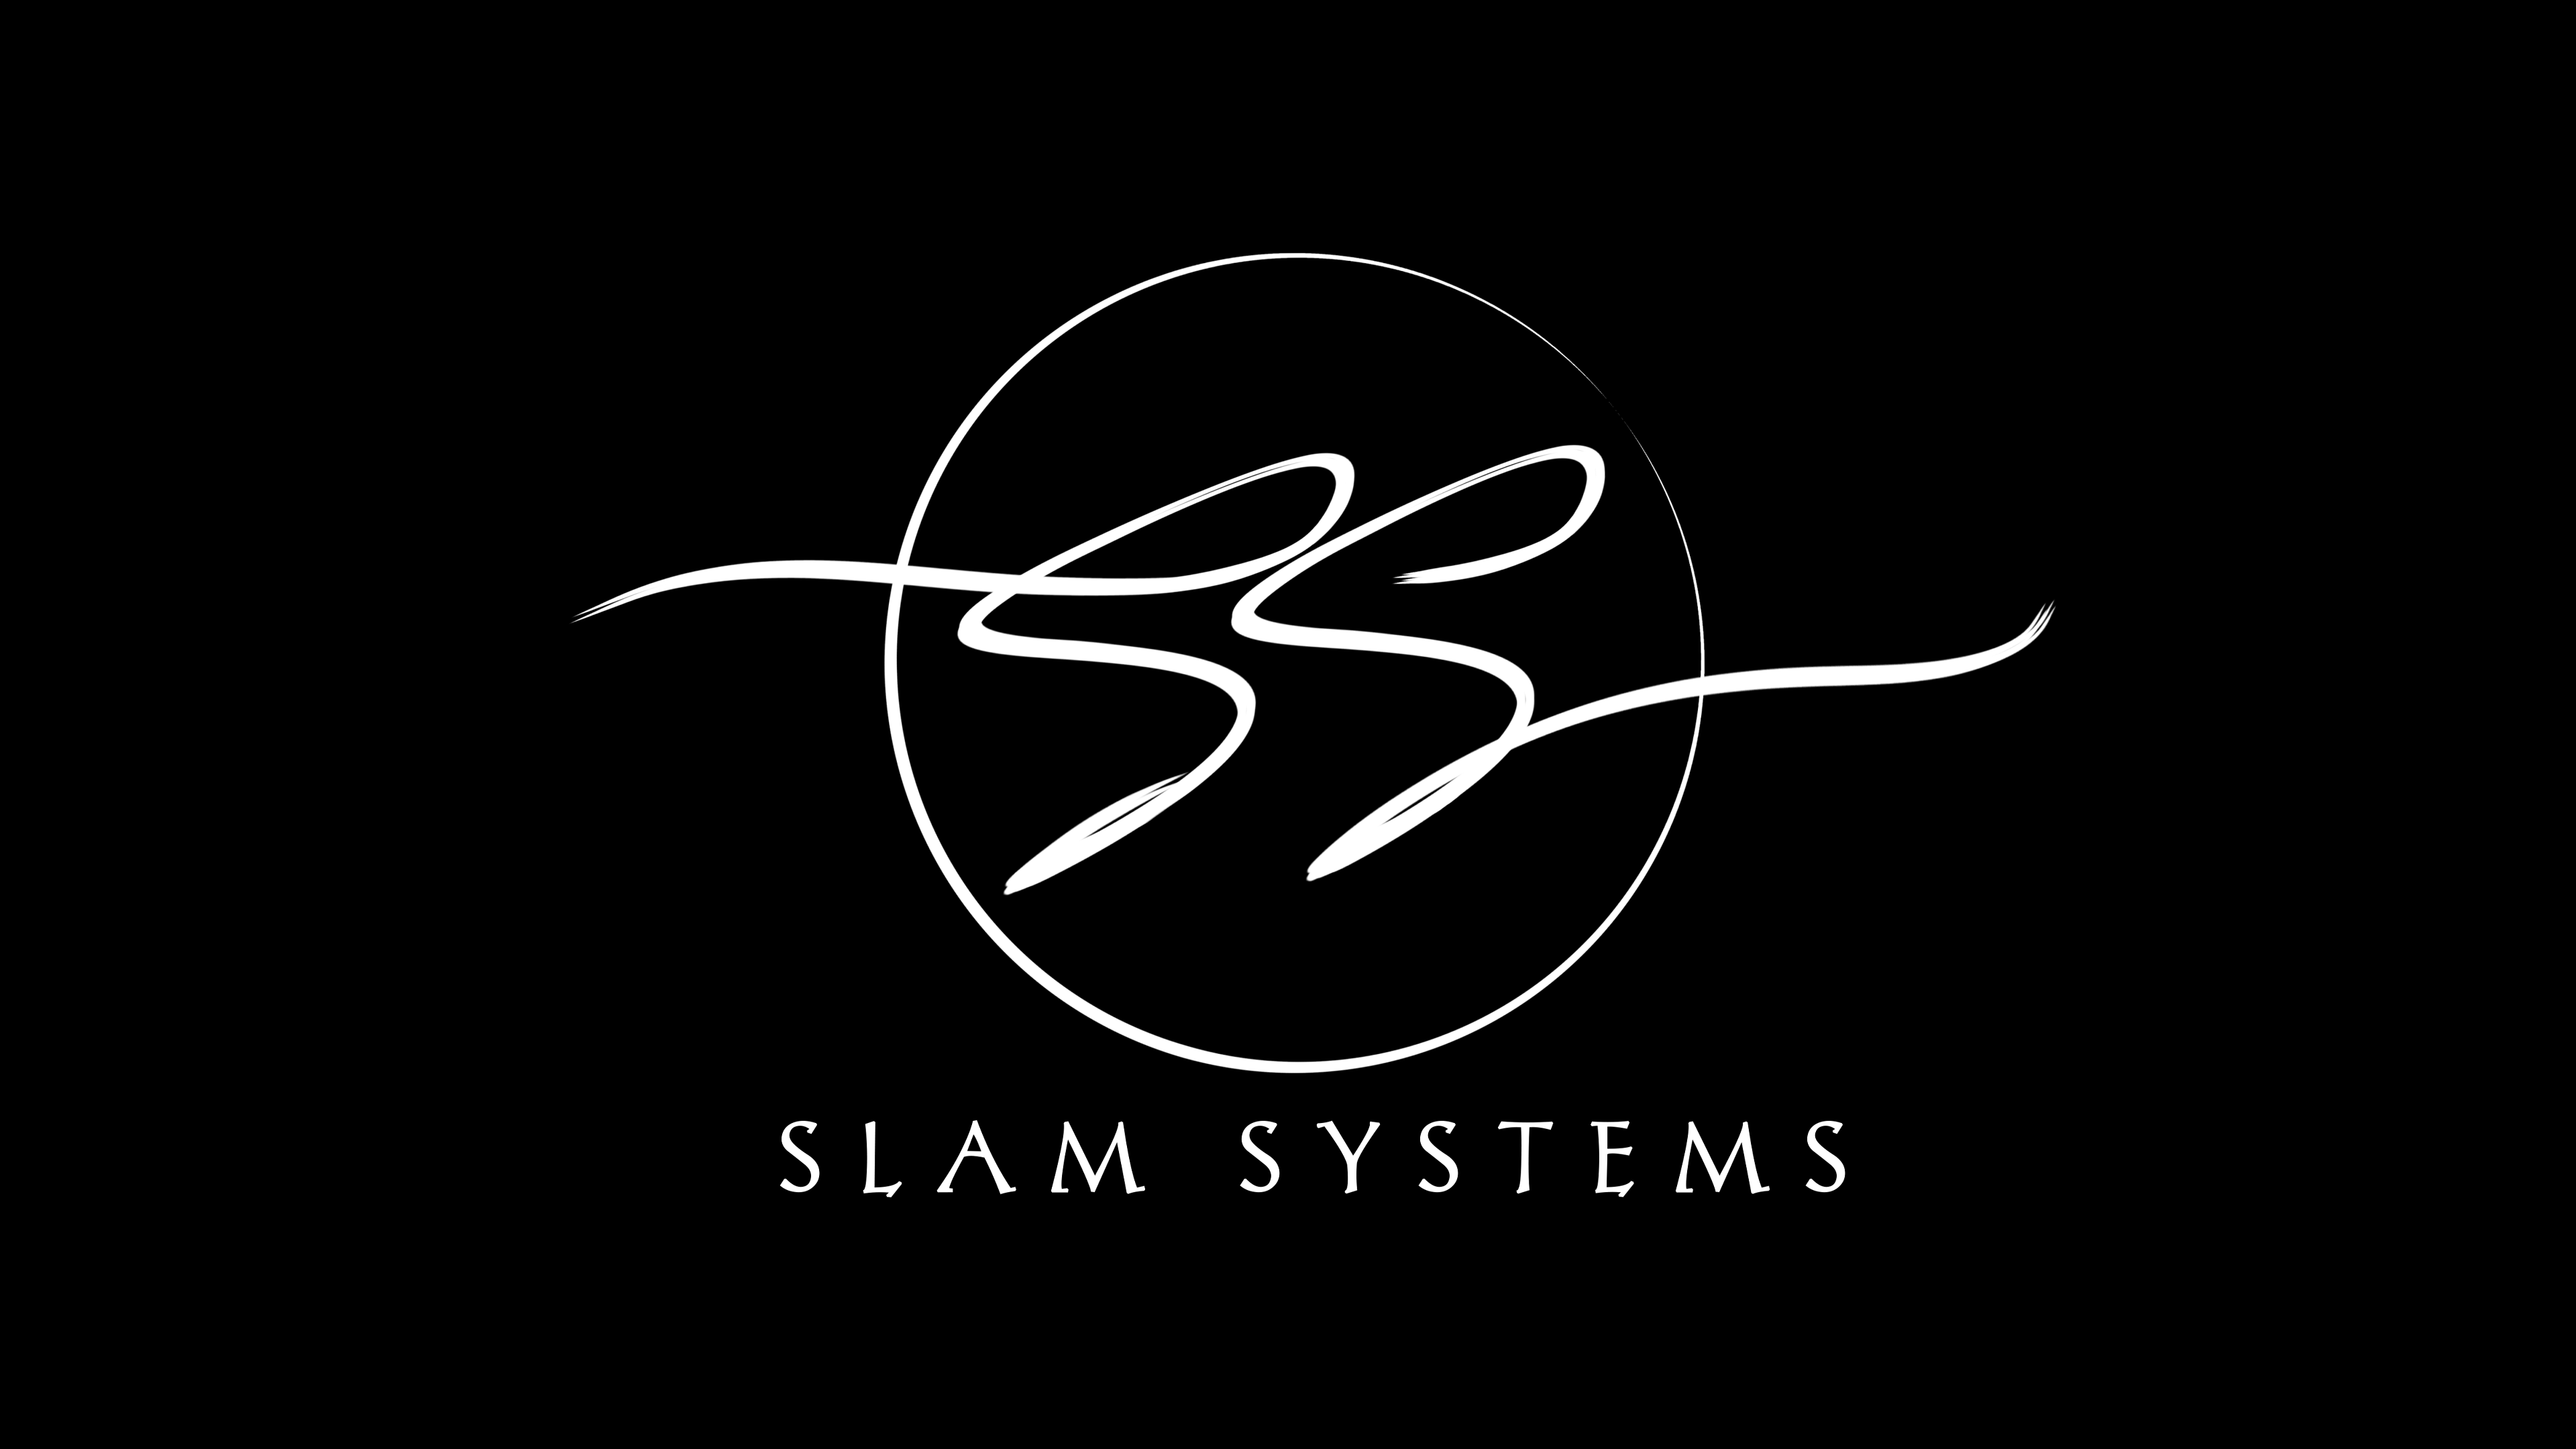 Slam Systems